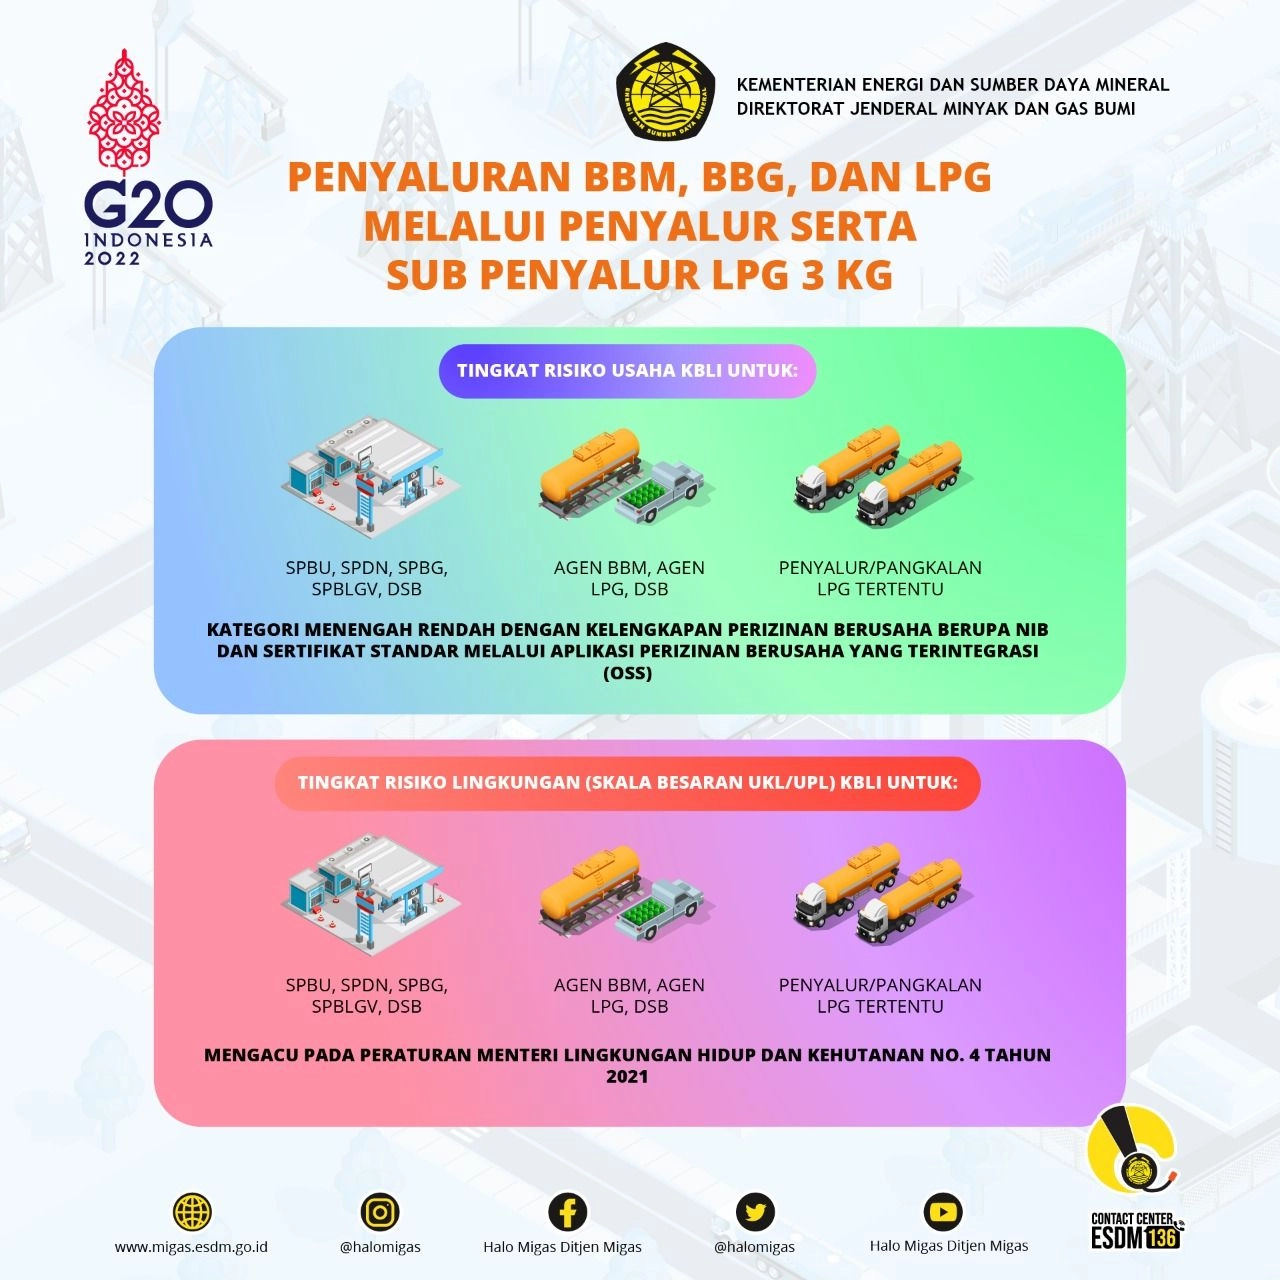 Penyaluran BBM, BBG,dan LPG melalui Penyalur Serta Sub Penyalur LPG 3 Kg